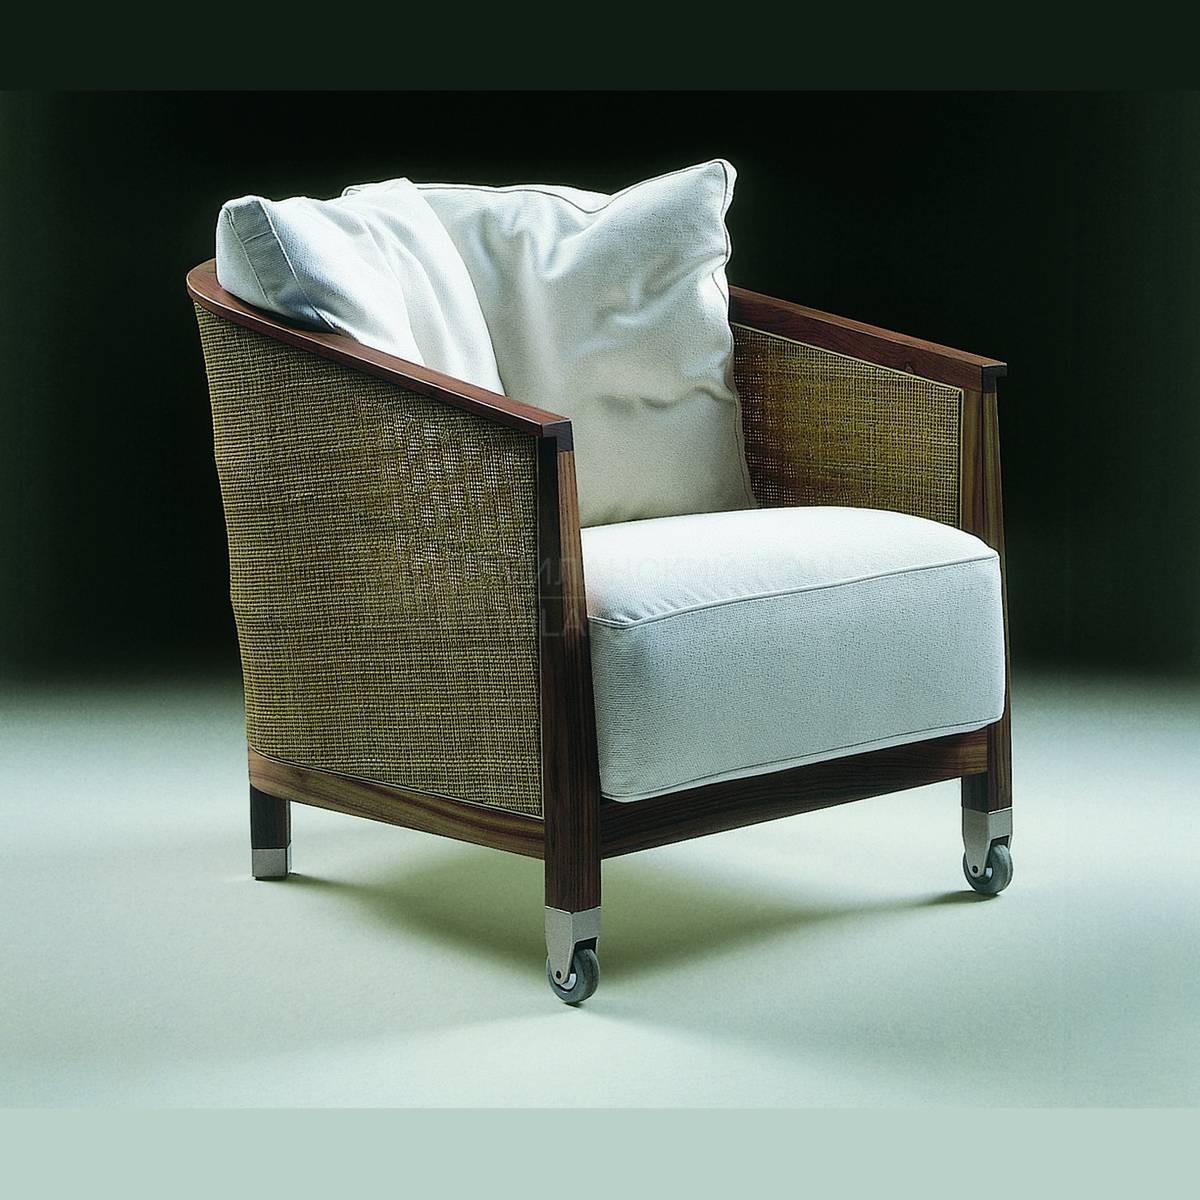 Круглое кресло Mozart/ armchair из Италии фабрики FLEXFORM